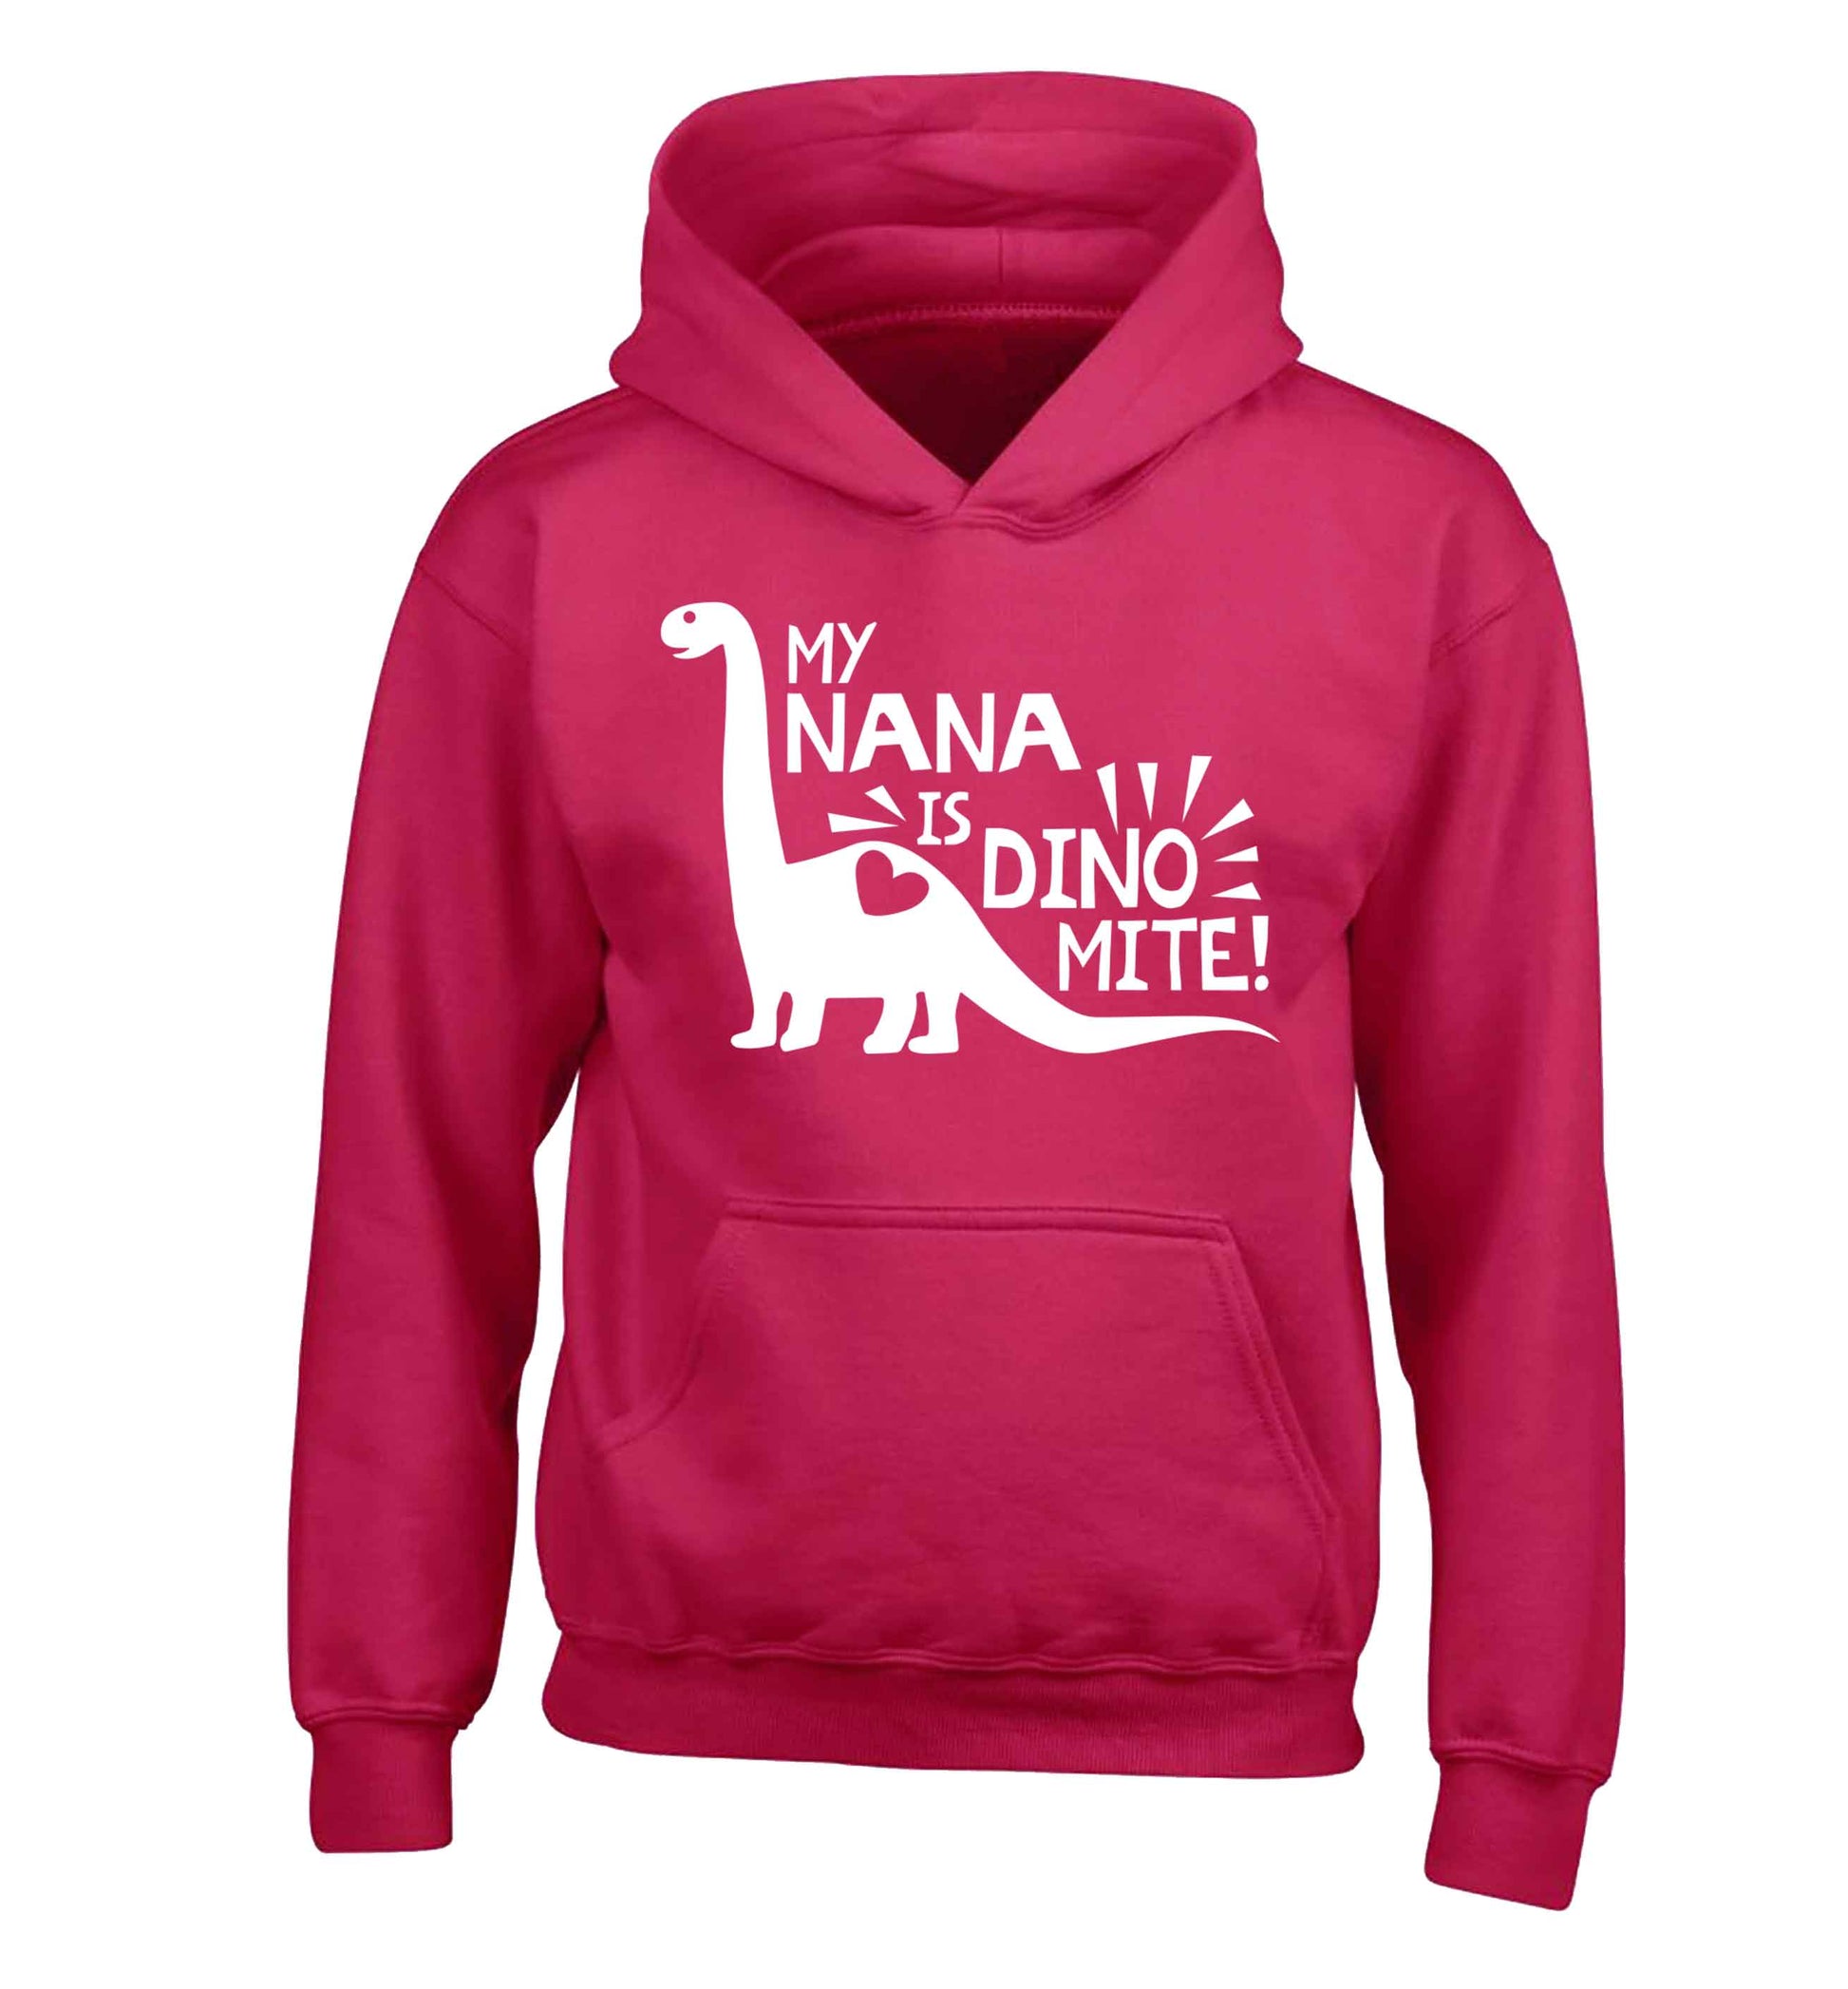 My nana is dinomite! children's pink hoodie 12-13 Years